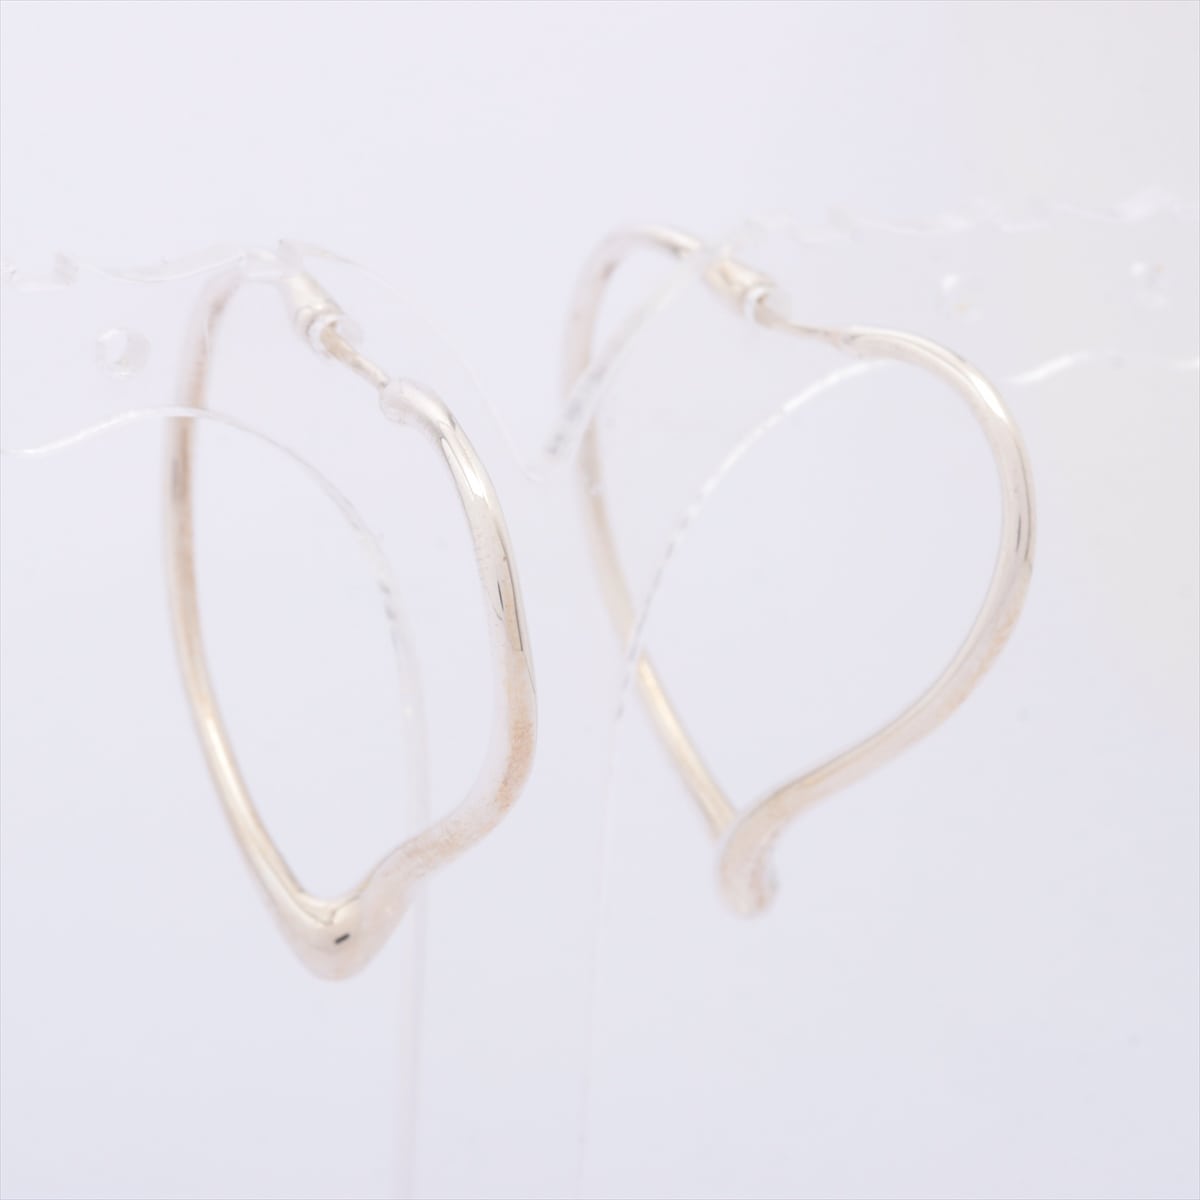 Tiffany Open Heart Hoop Piercing jewelry (for both ears) 925 5.5g Silver